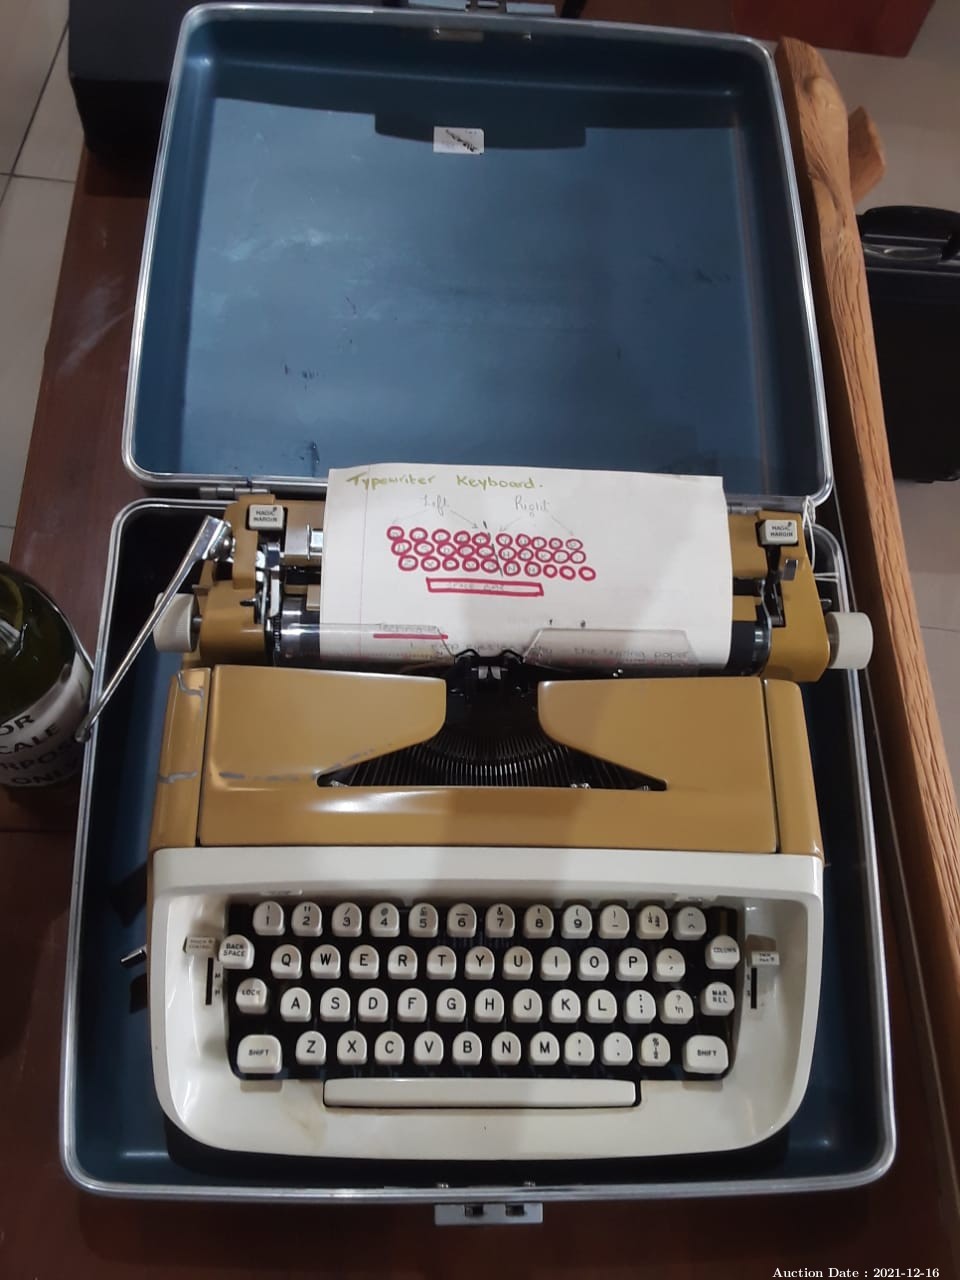 788 - Portable Royal Typewriter